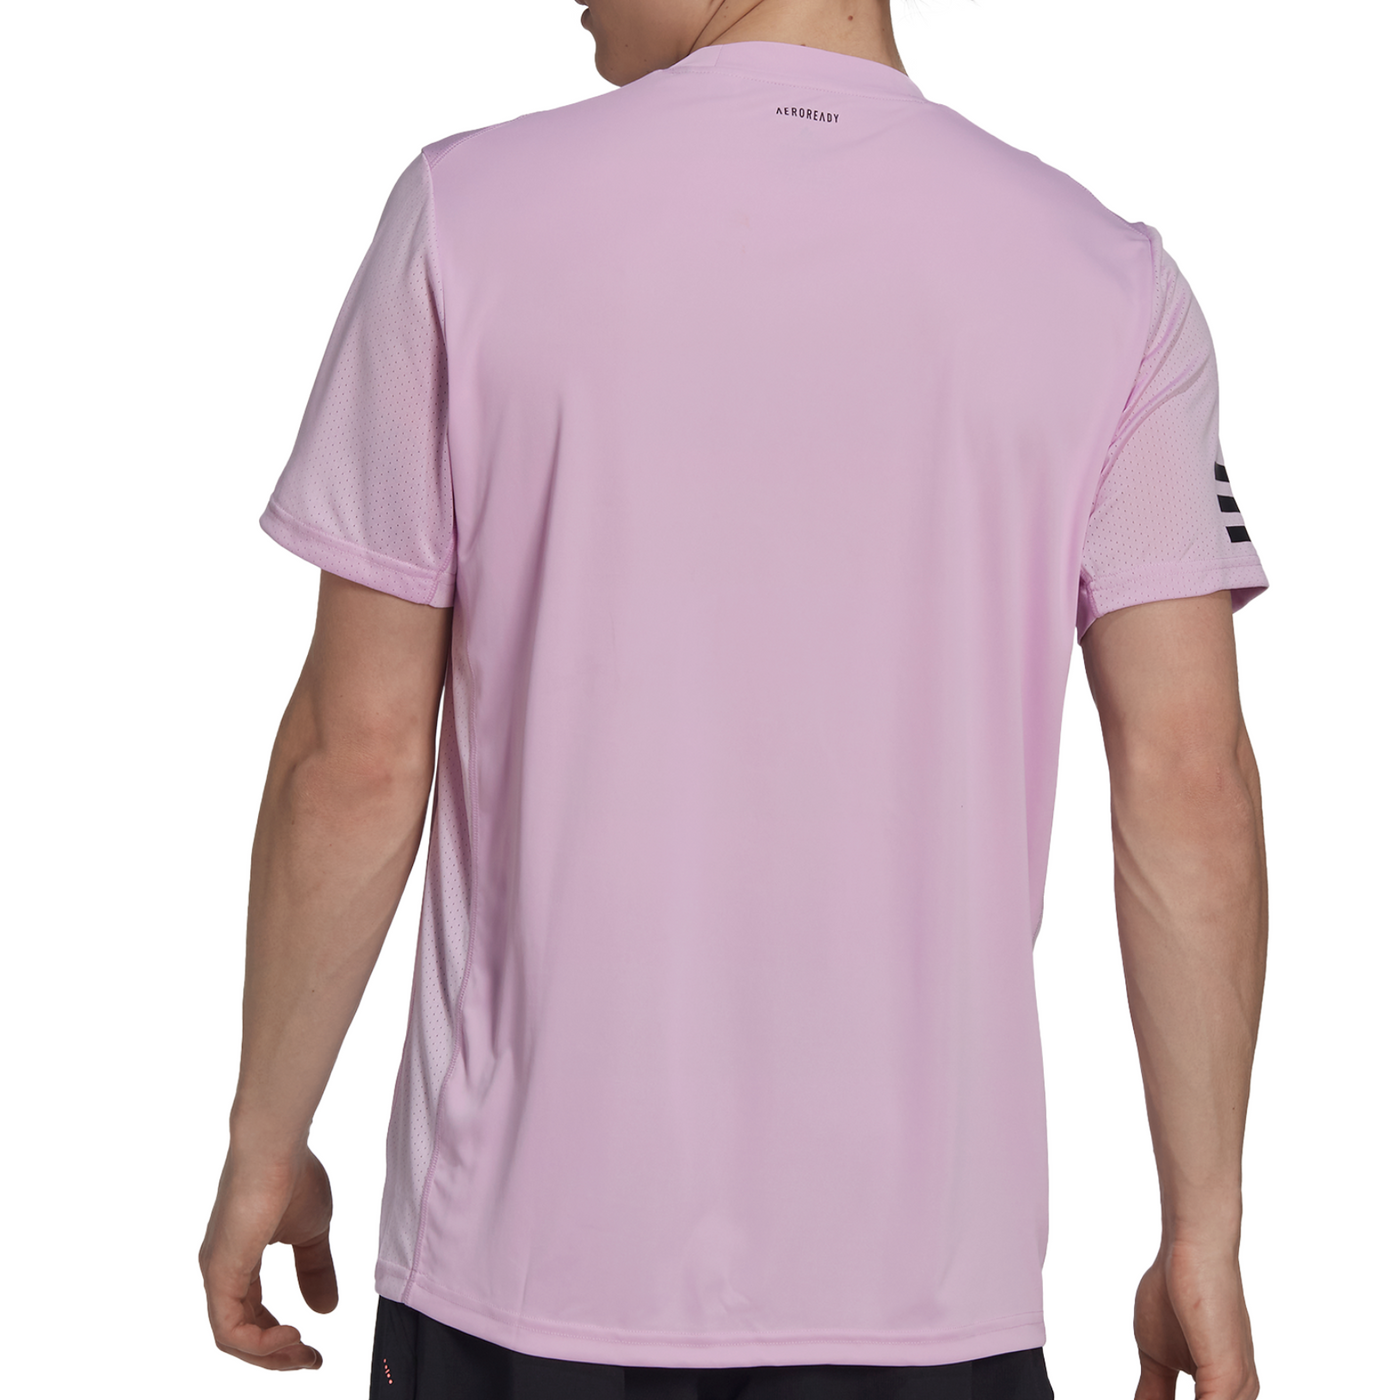 Adidas Performance Club Tennis 3-Stripes Men T-Shirt 